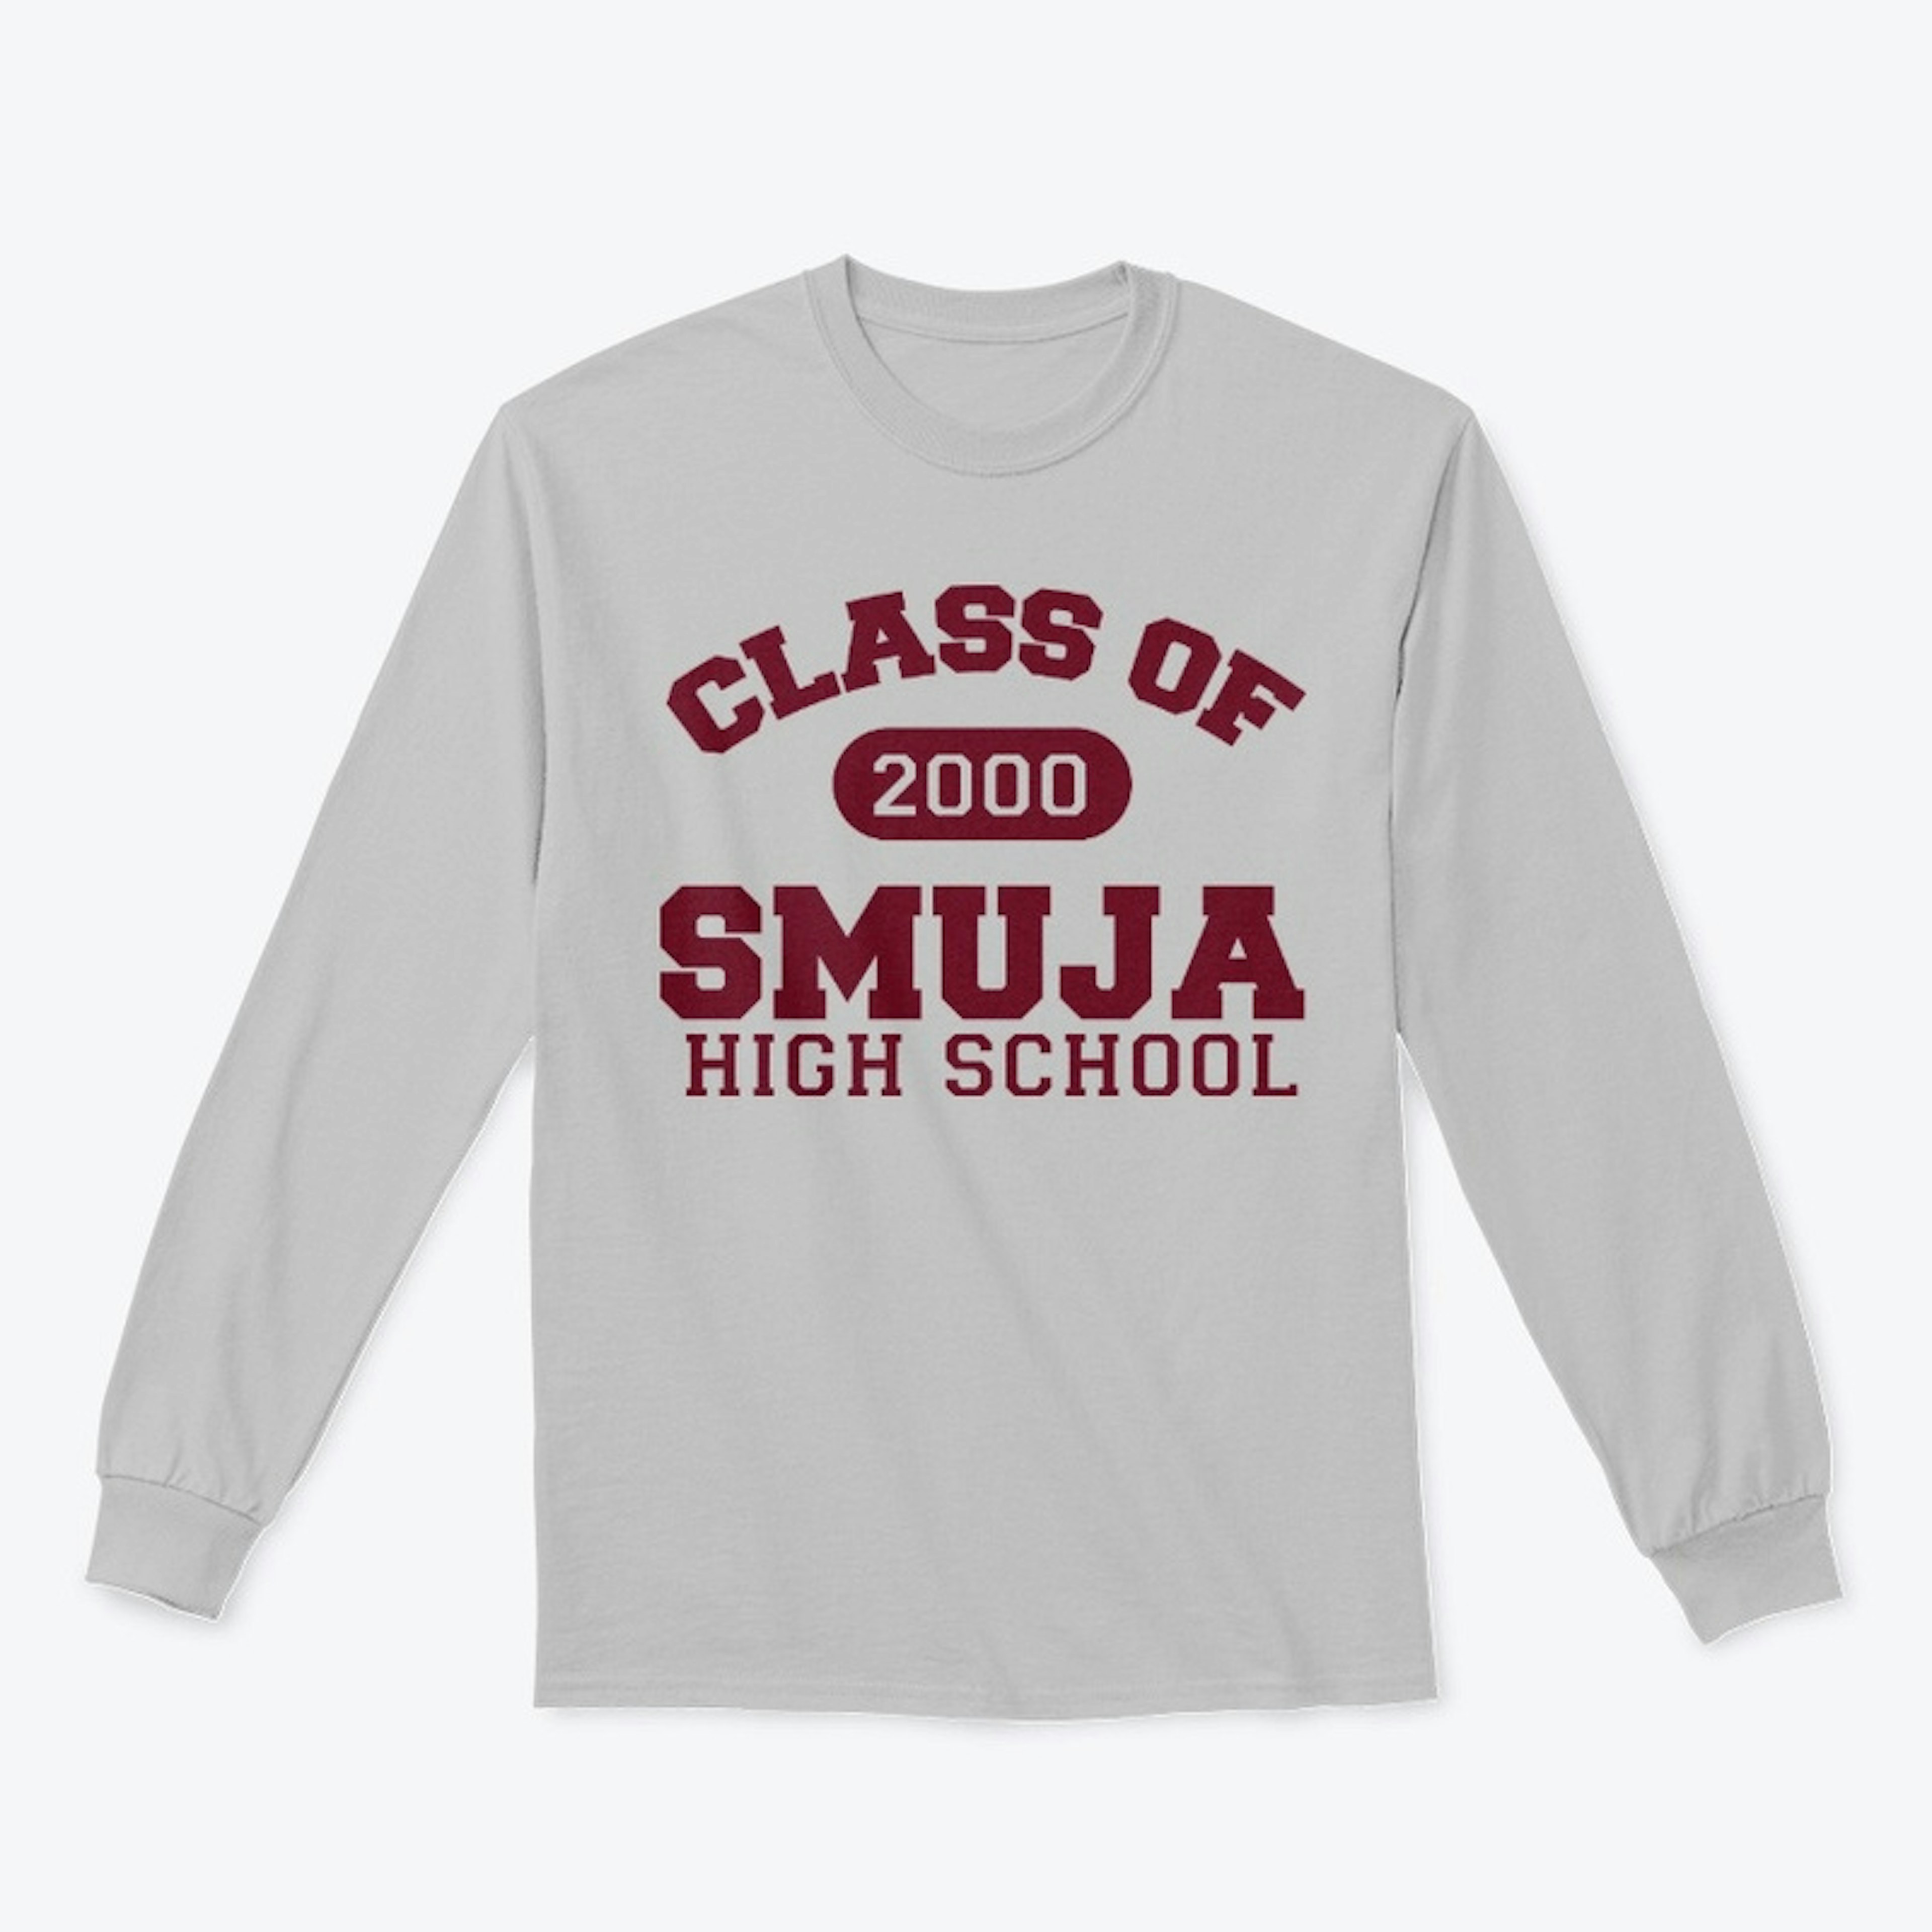 Smuja Class Of 2000